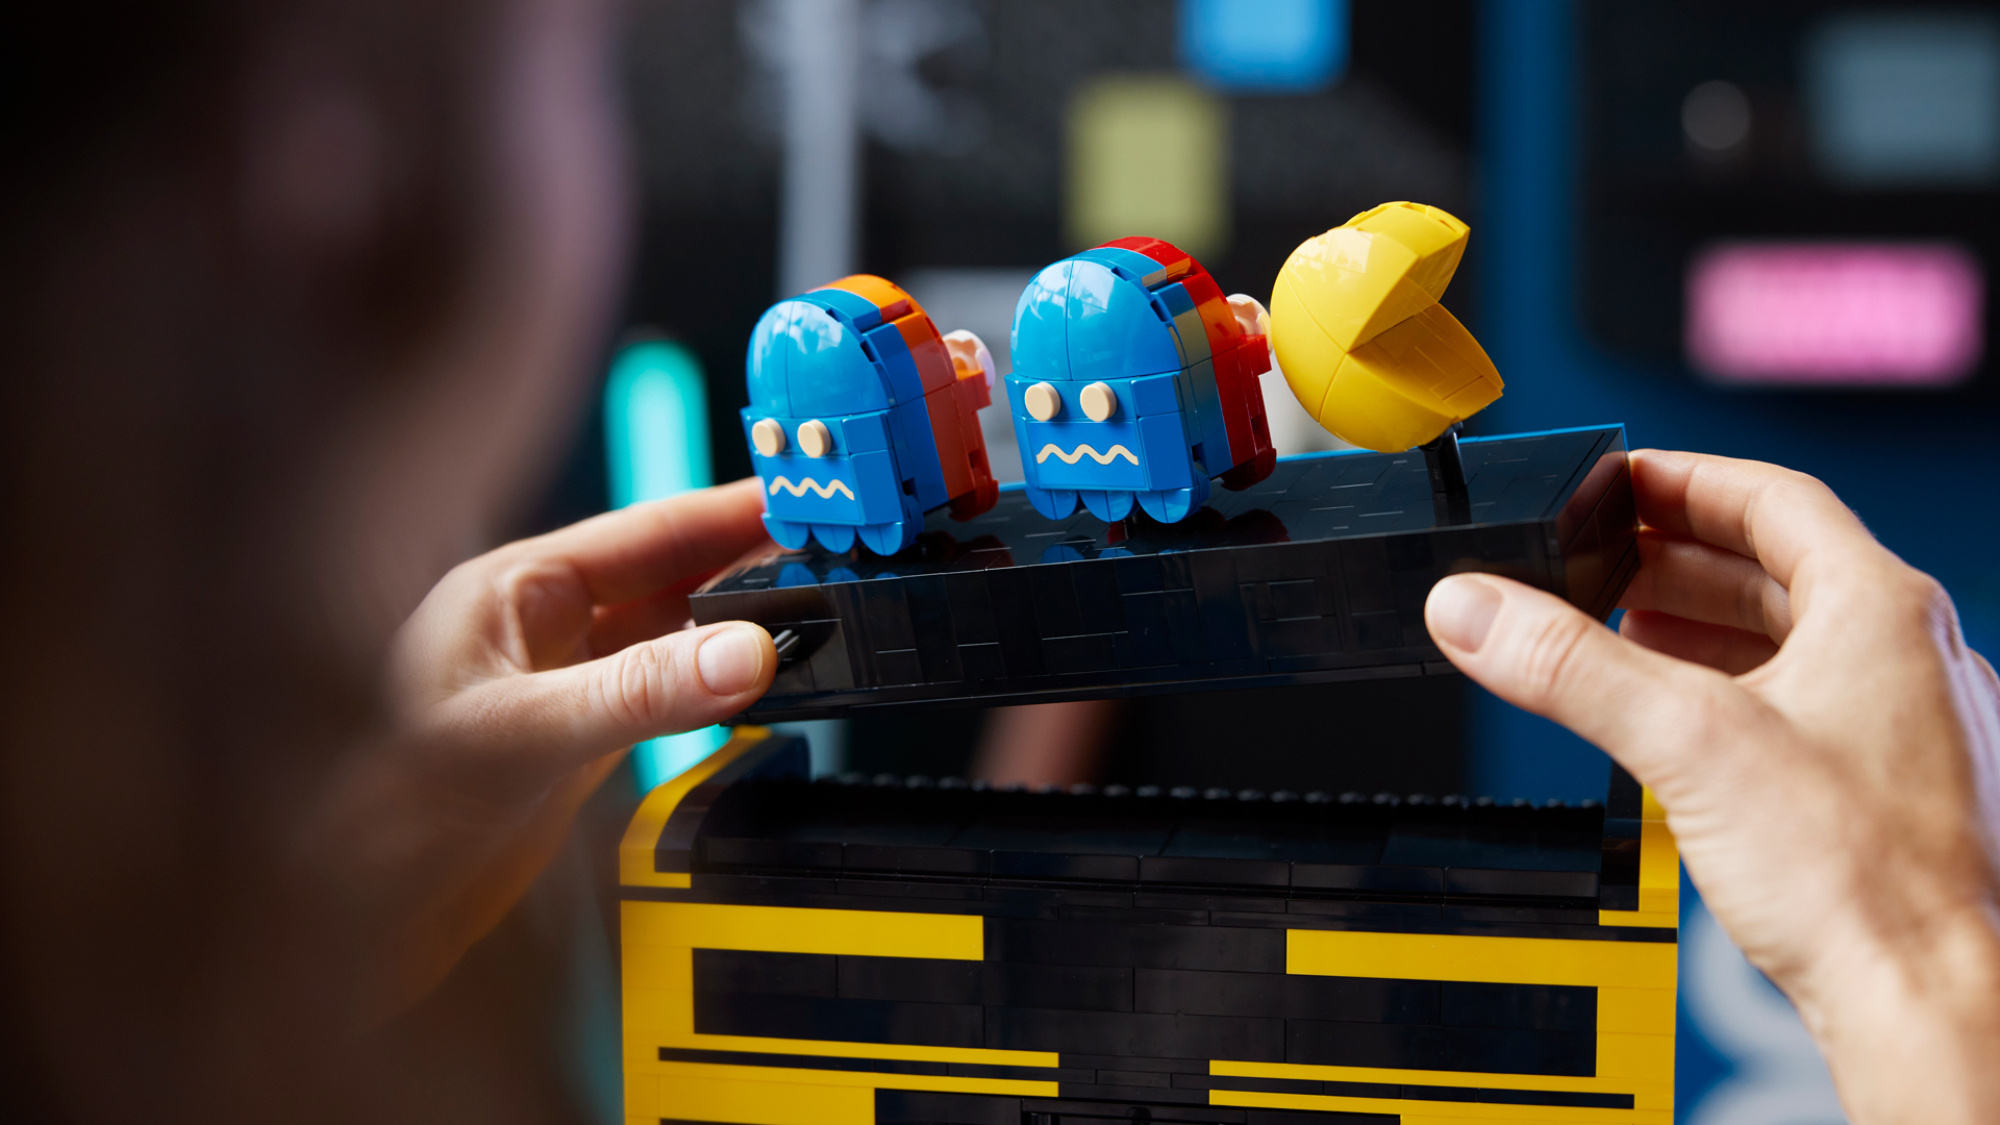 Personnages Pac-Man en Lego.